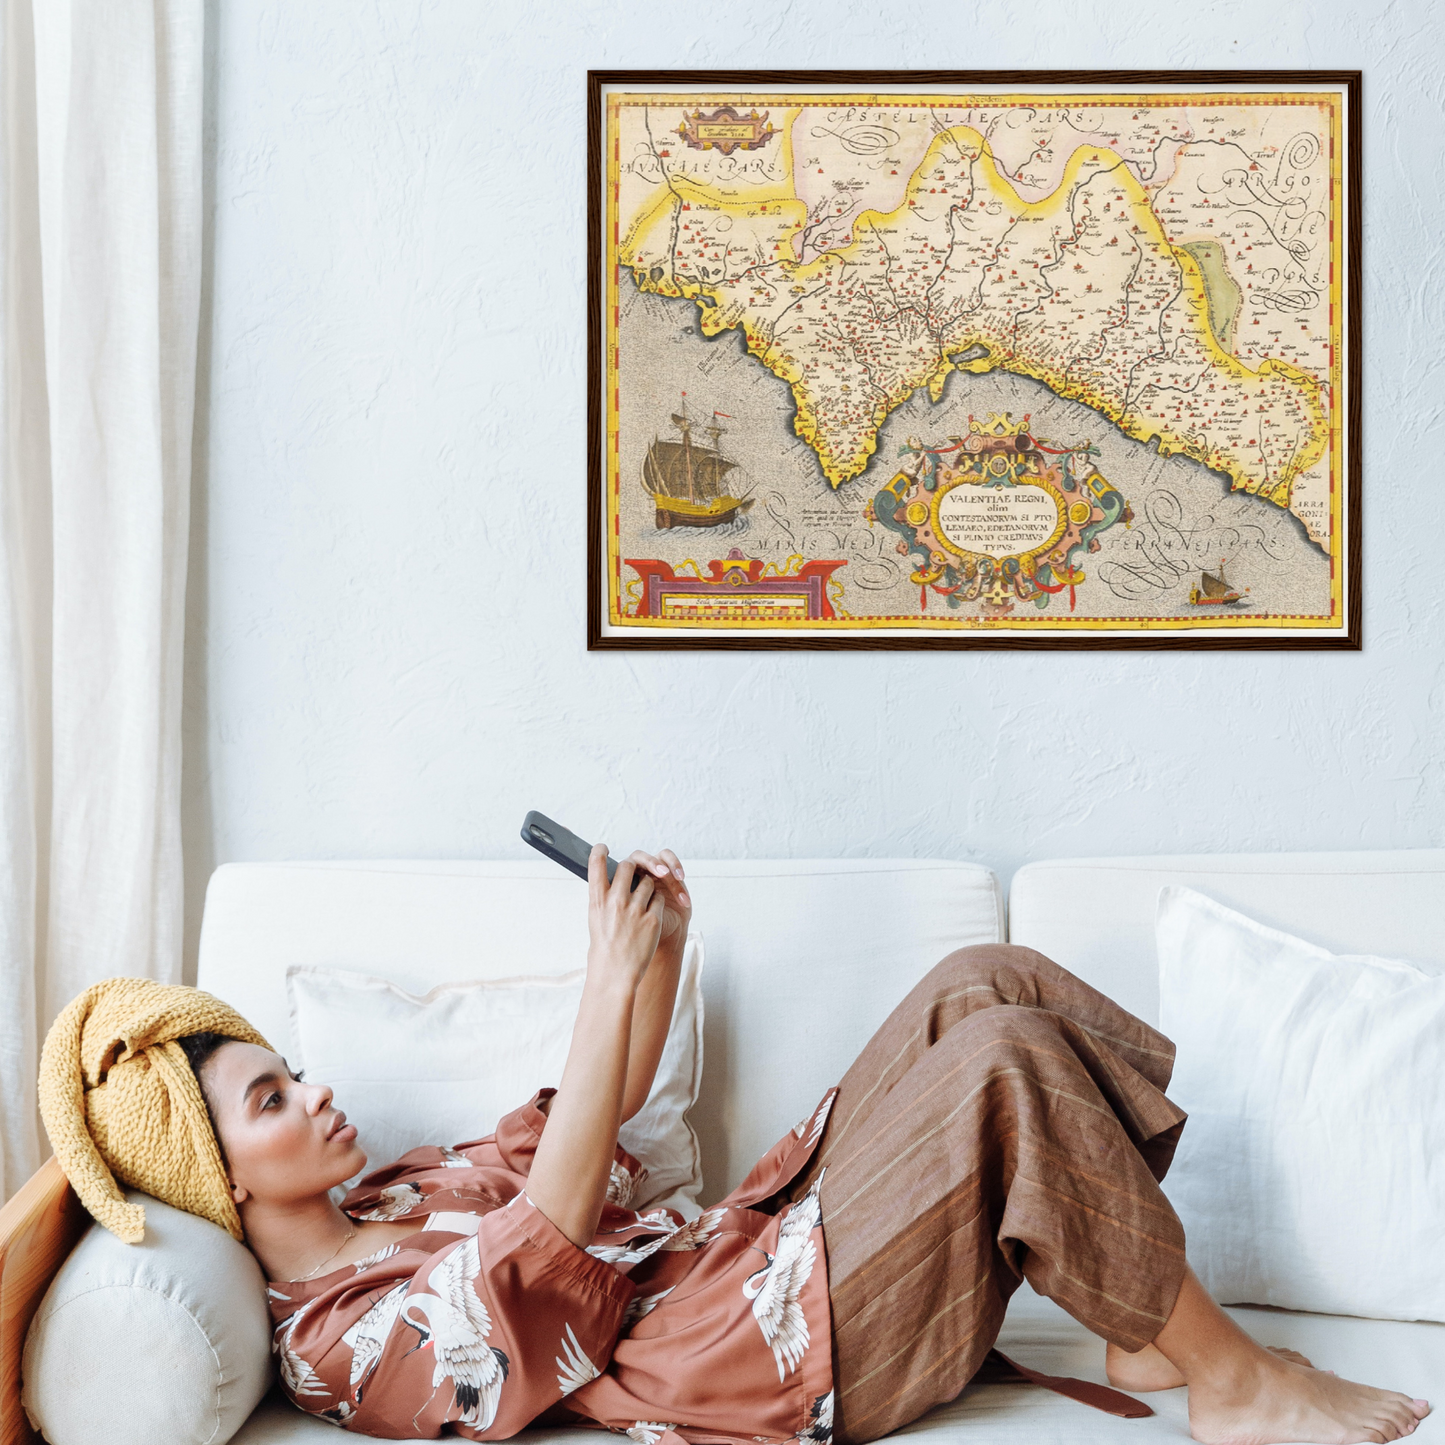 Historische Landkarte Valencia um 1609